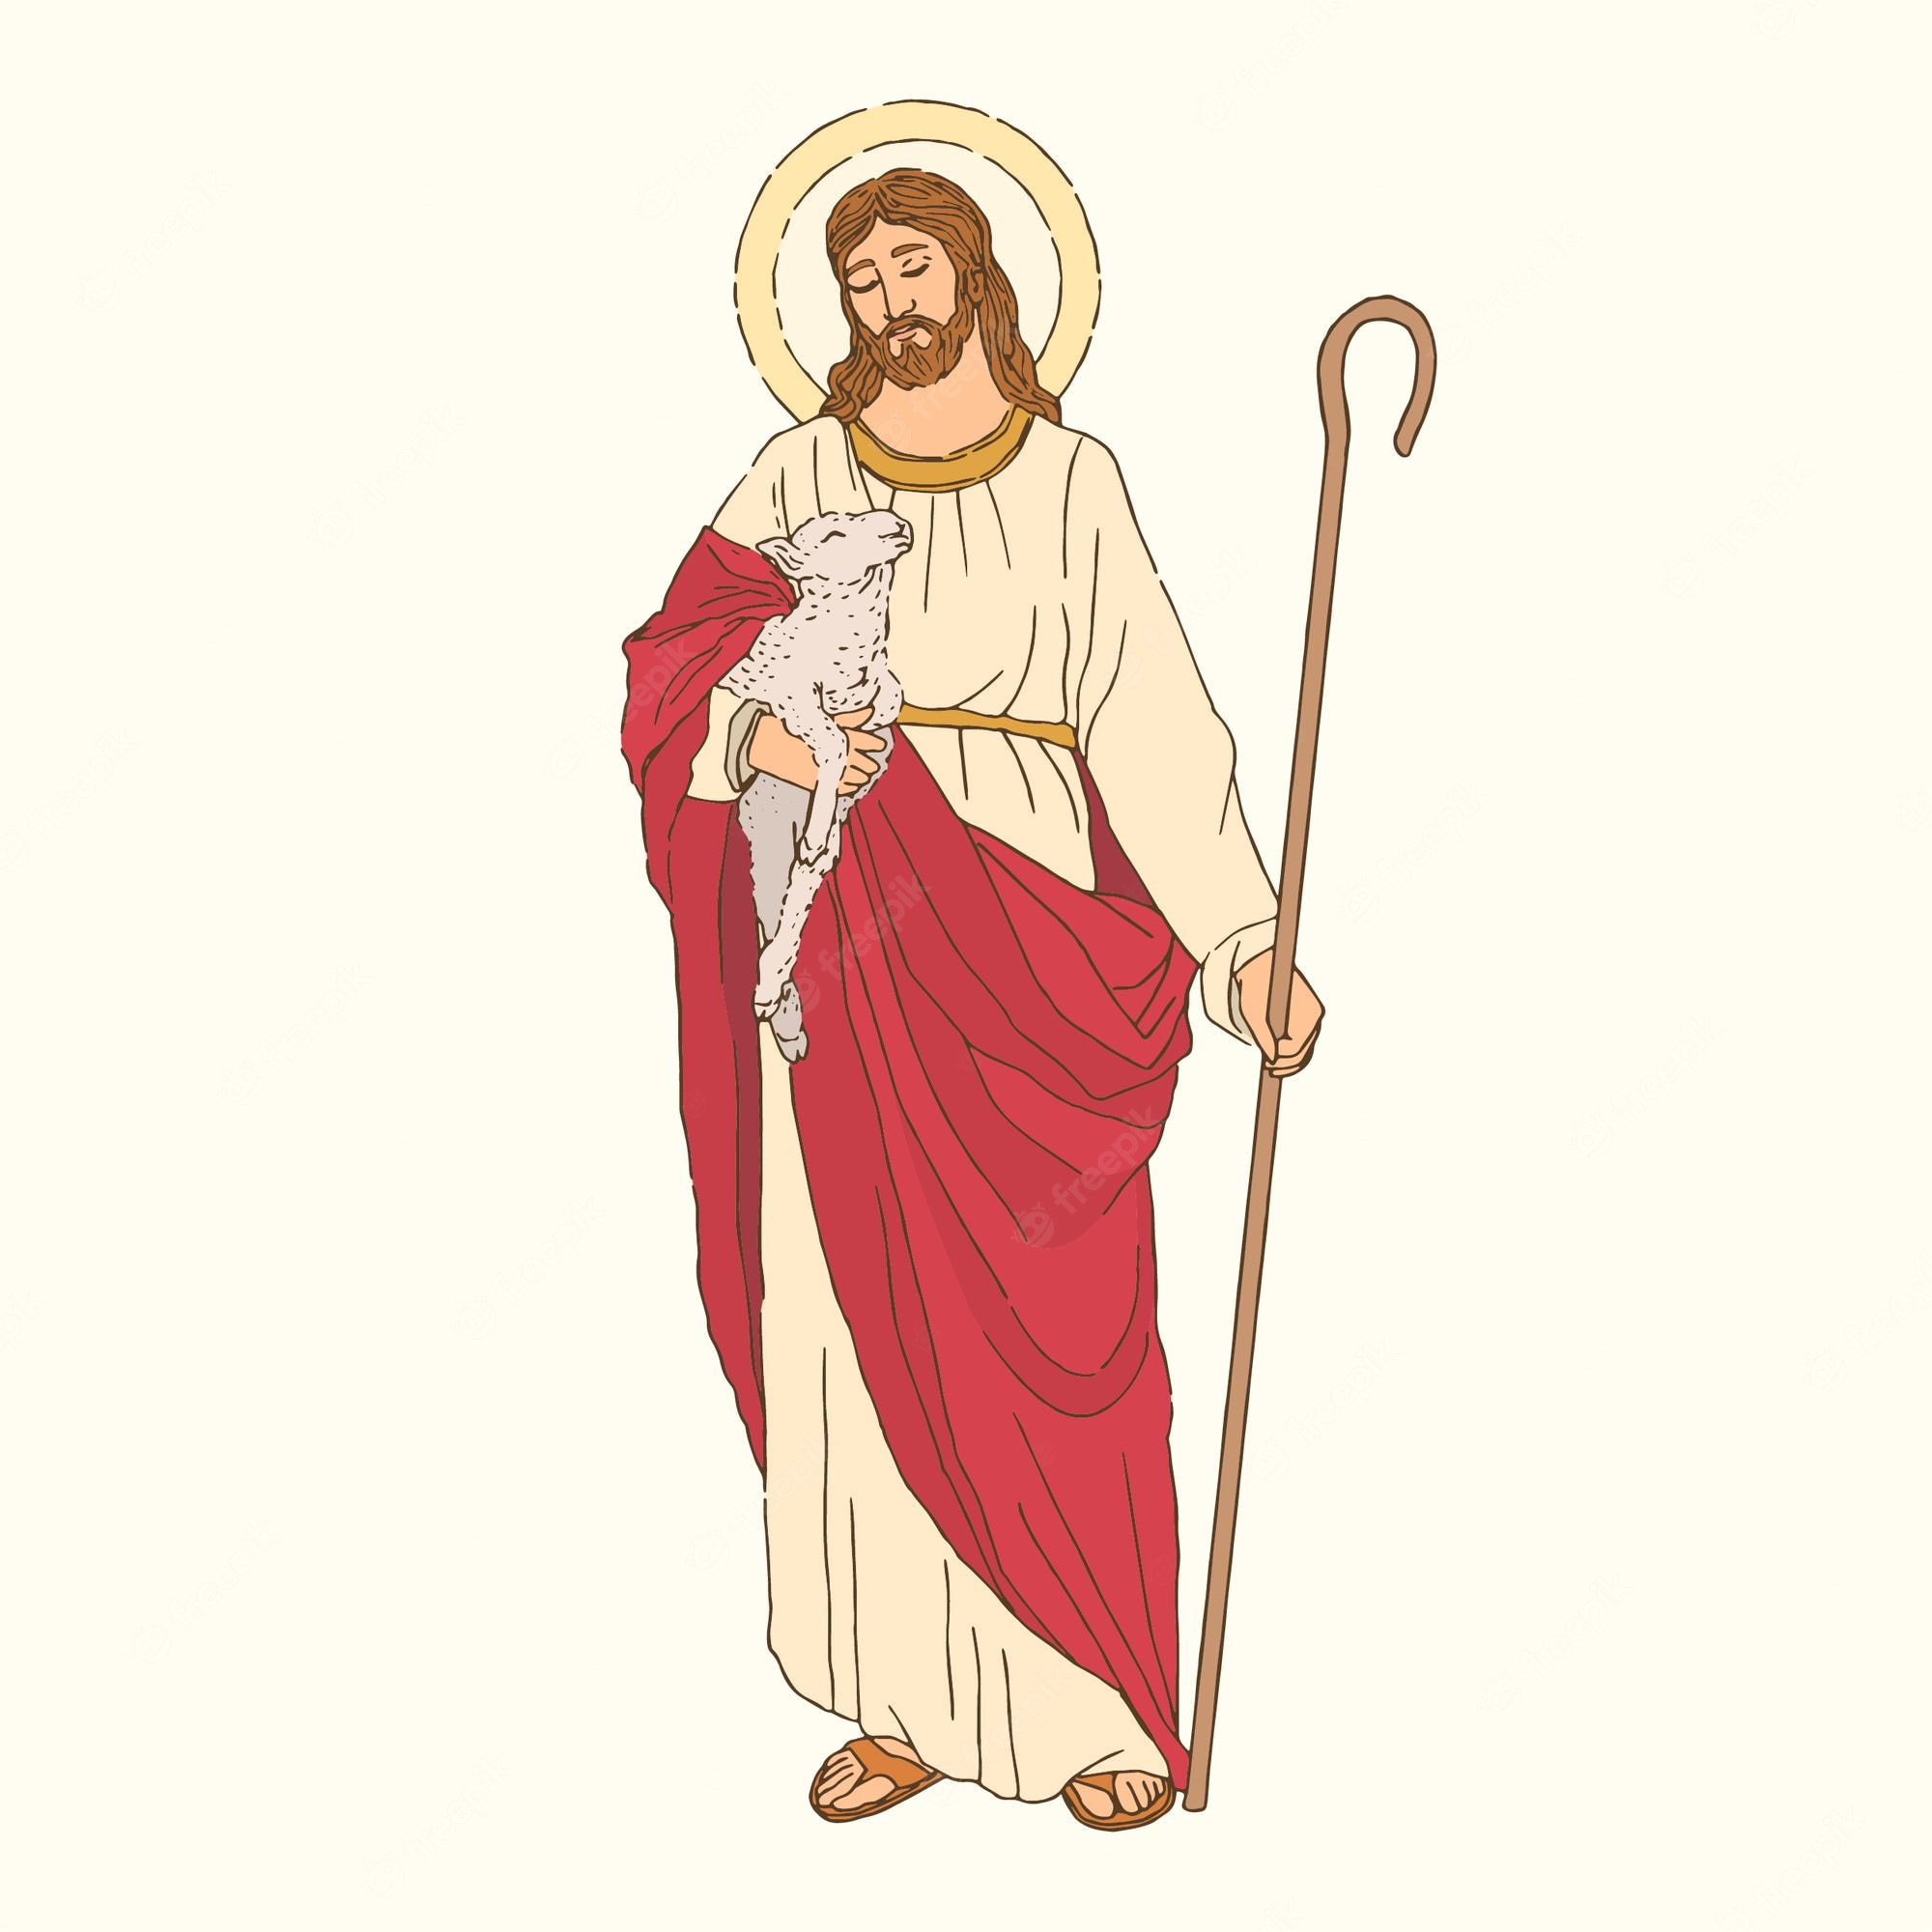 Jesus Shepherd Image. Free Vectors, & PSD